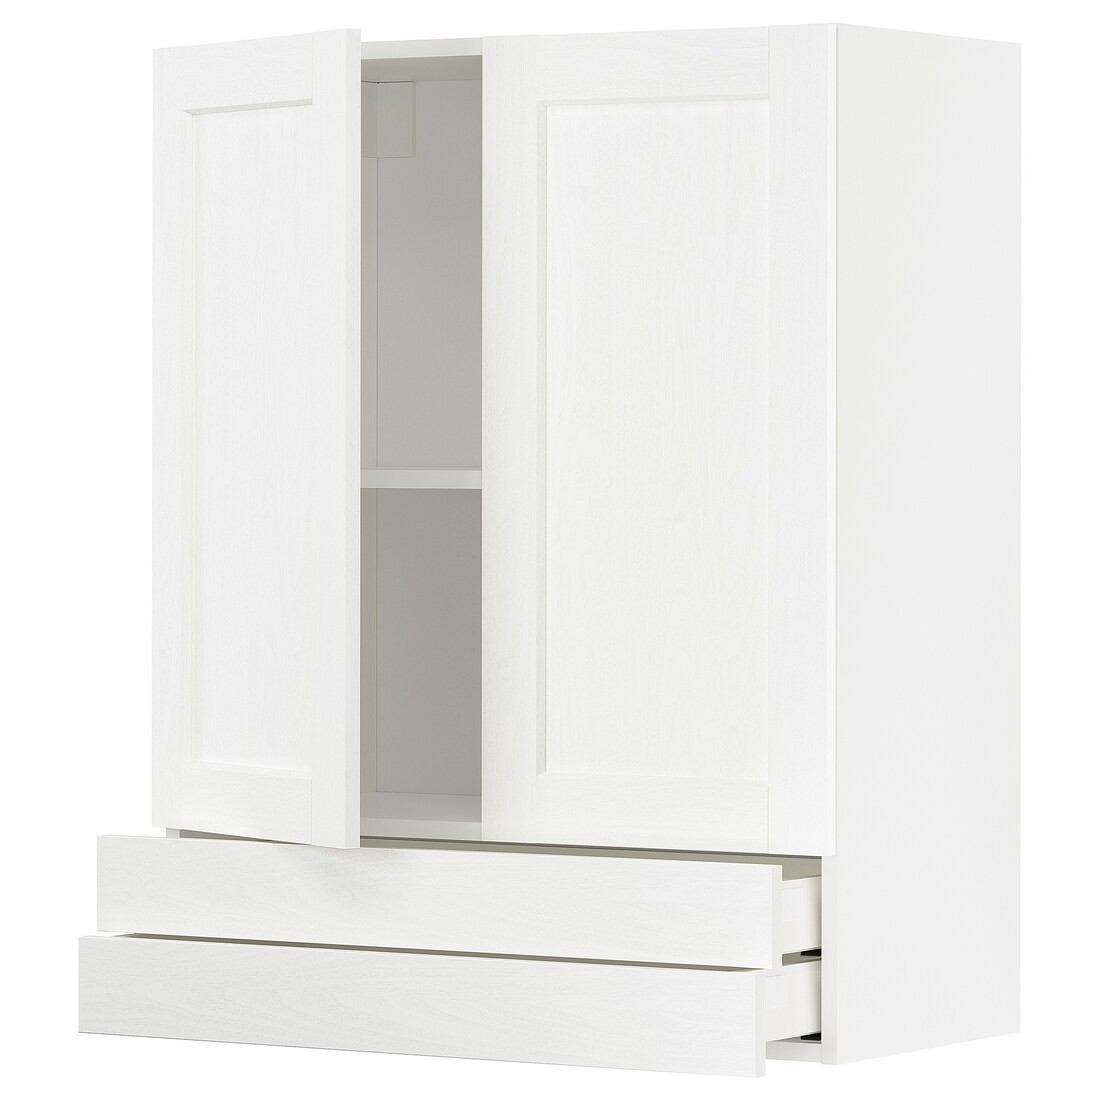 METOD МЕТОД / MAXIMERA МАКСИМЕРА Навесной шкаф / 2 дверцы / 2 ящика, белый Enköping / белый имитация дерева, 80x100 см